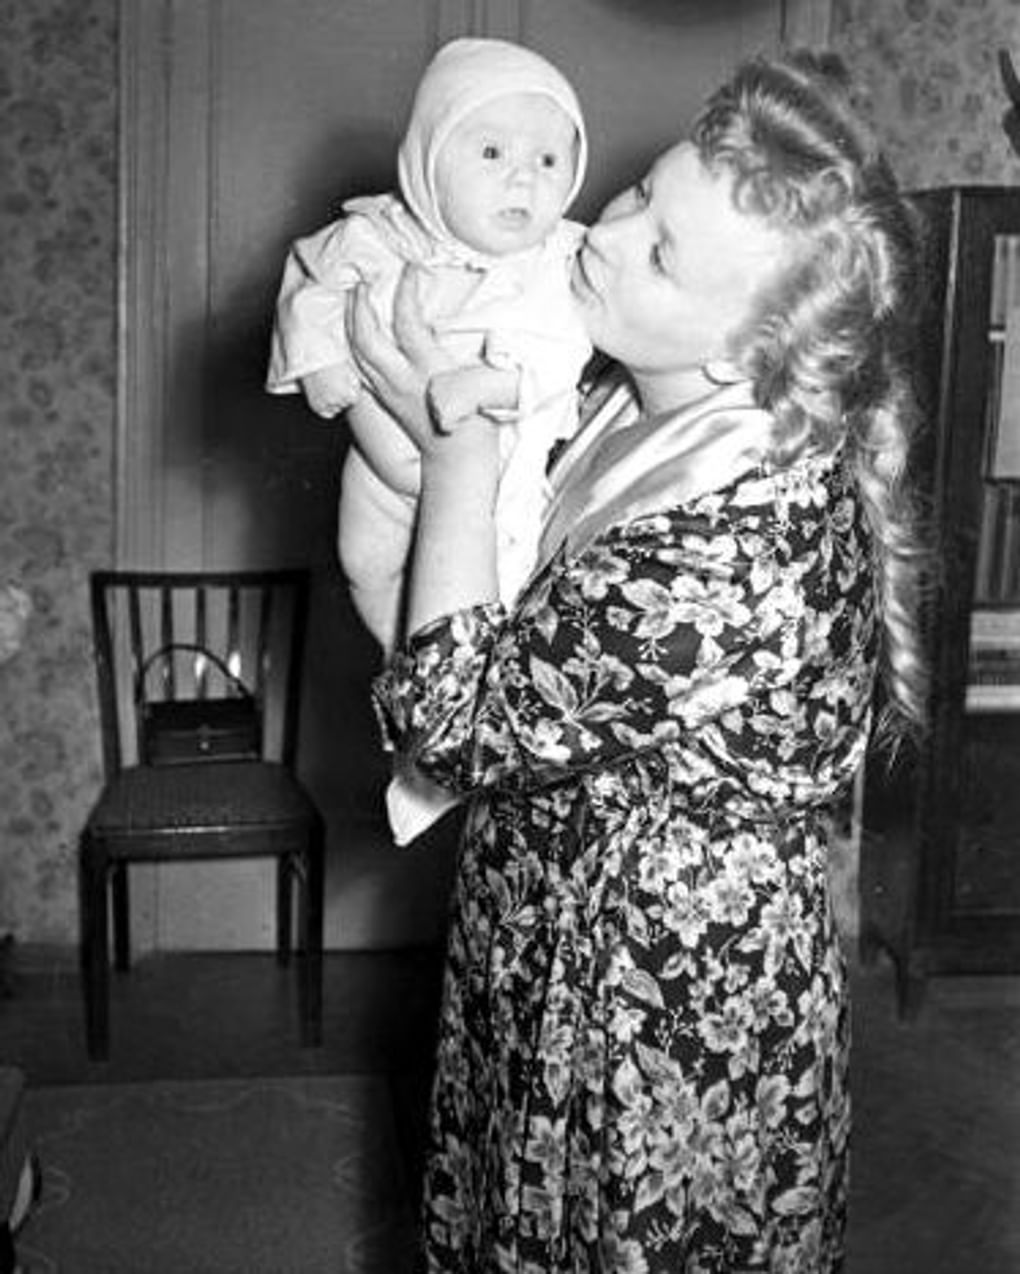 Алла Ларионова с ребенком дома. Москва, 1957 год. Фотография: Семен Мишин-Моргенштерн / Мультимедиа Арт Музей, Москва